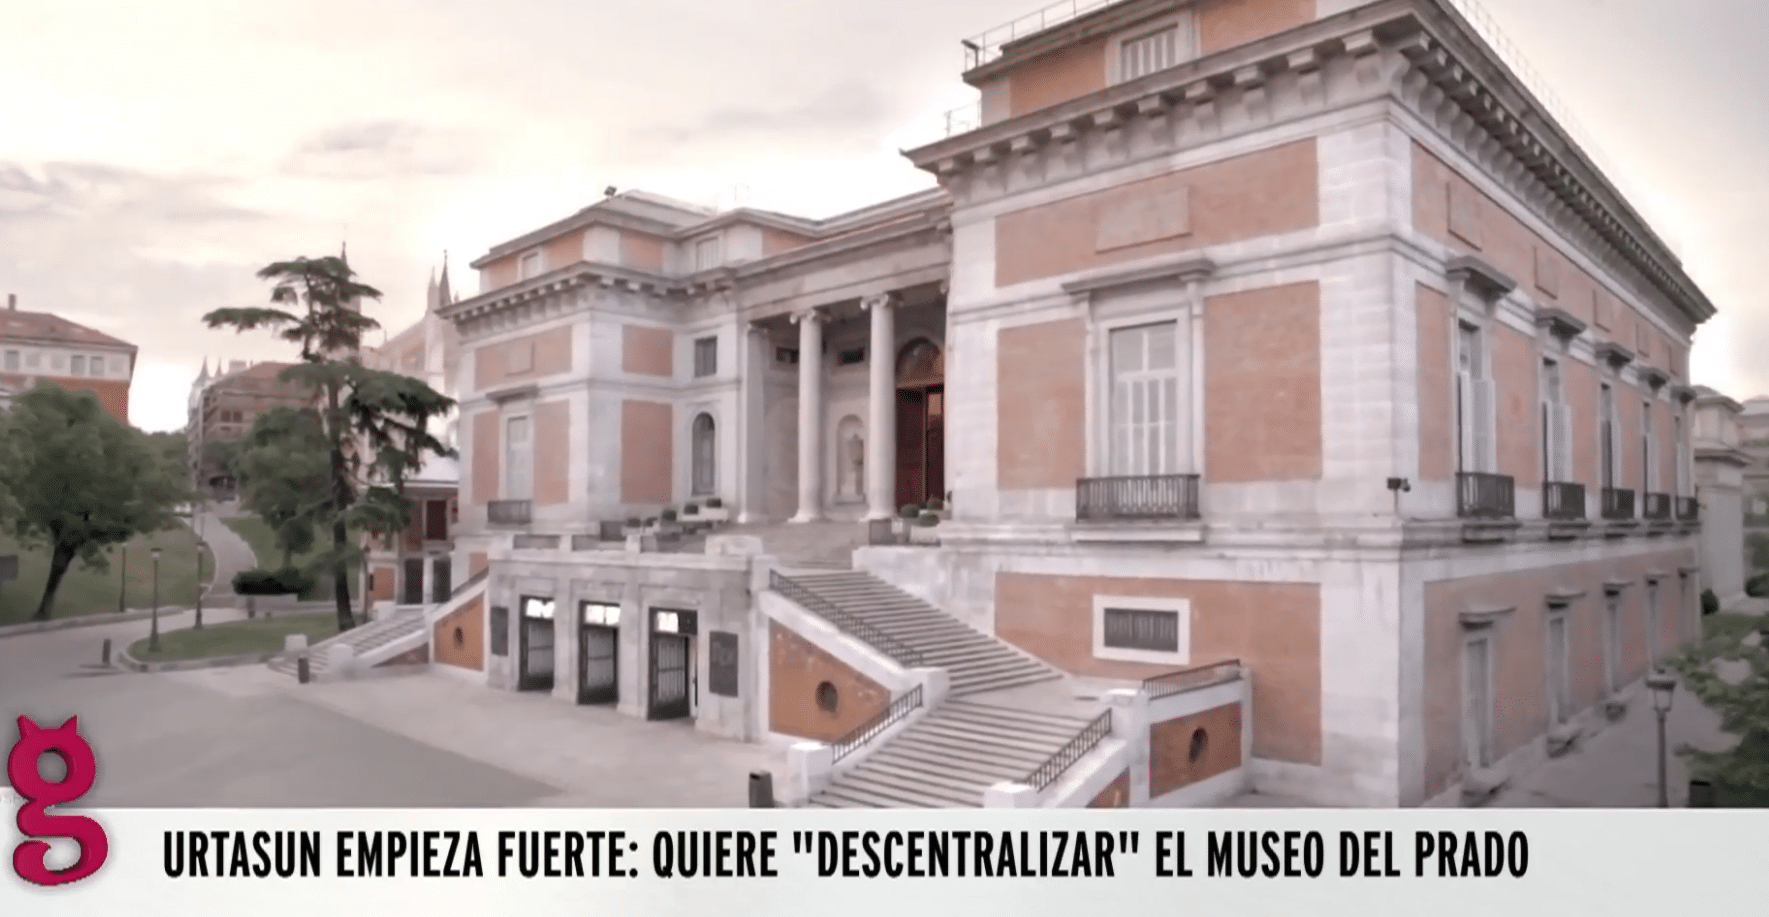 Ofensiva desnacionalizadora: Urtasun quiere sacar las obras del Museo del Prado